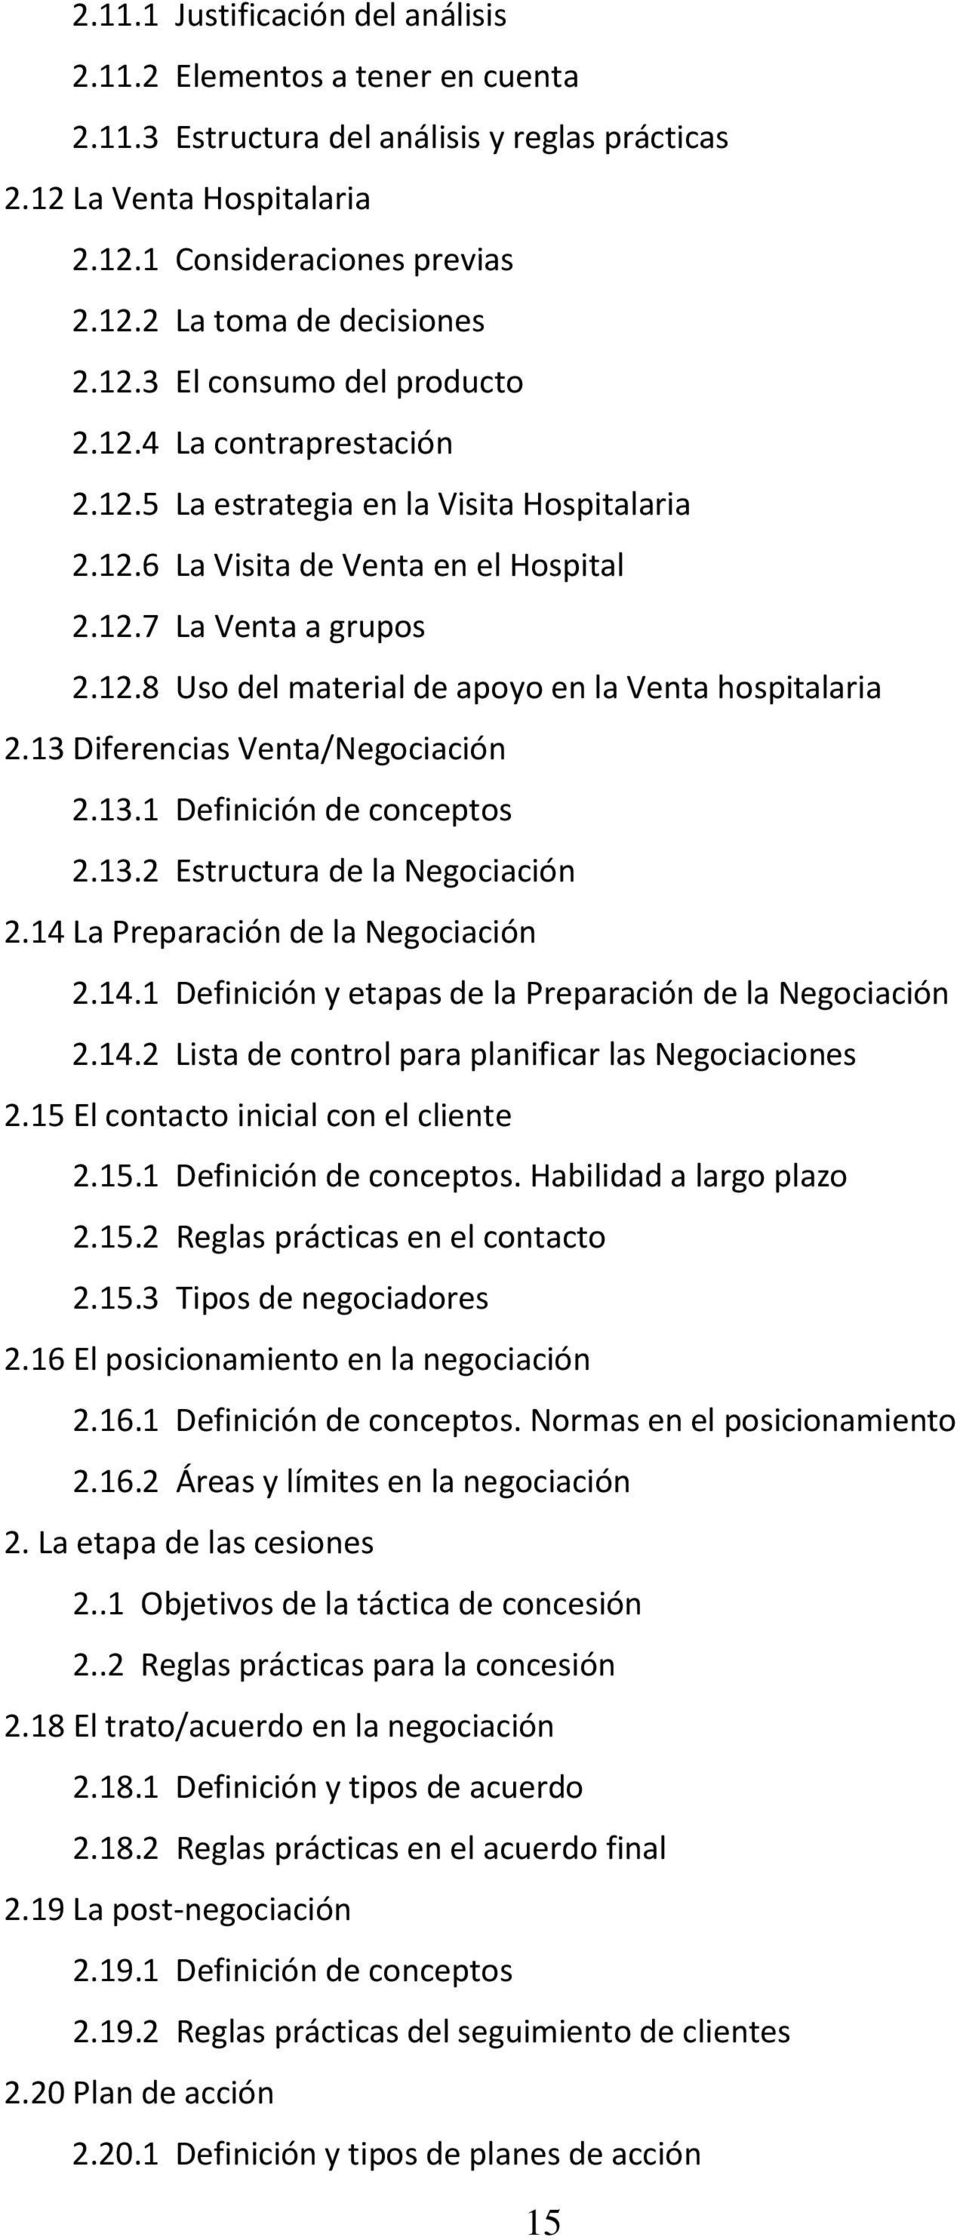 13 Diferencias Venta/Negociación 2.13.1 Definición de conceptos 2.13.2 Estructura de la Negociación 2.14 La Preparación de la Negociación 2.14.1 Definición y etapas de la Preparación de la Negociación 2.